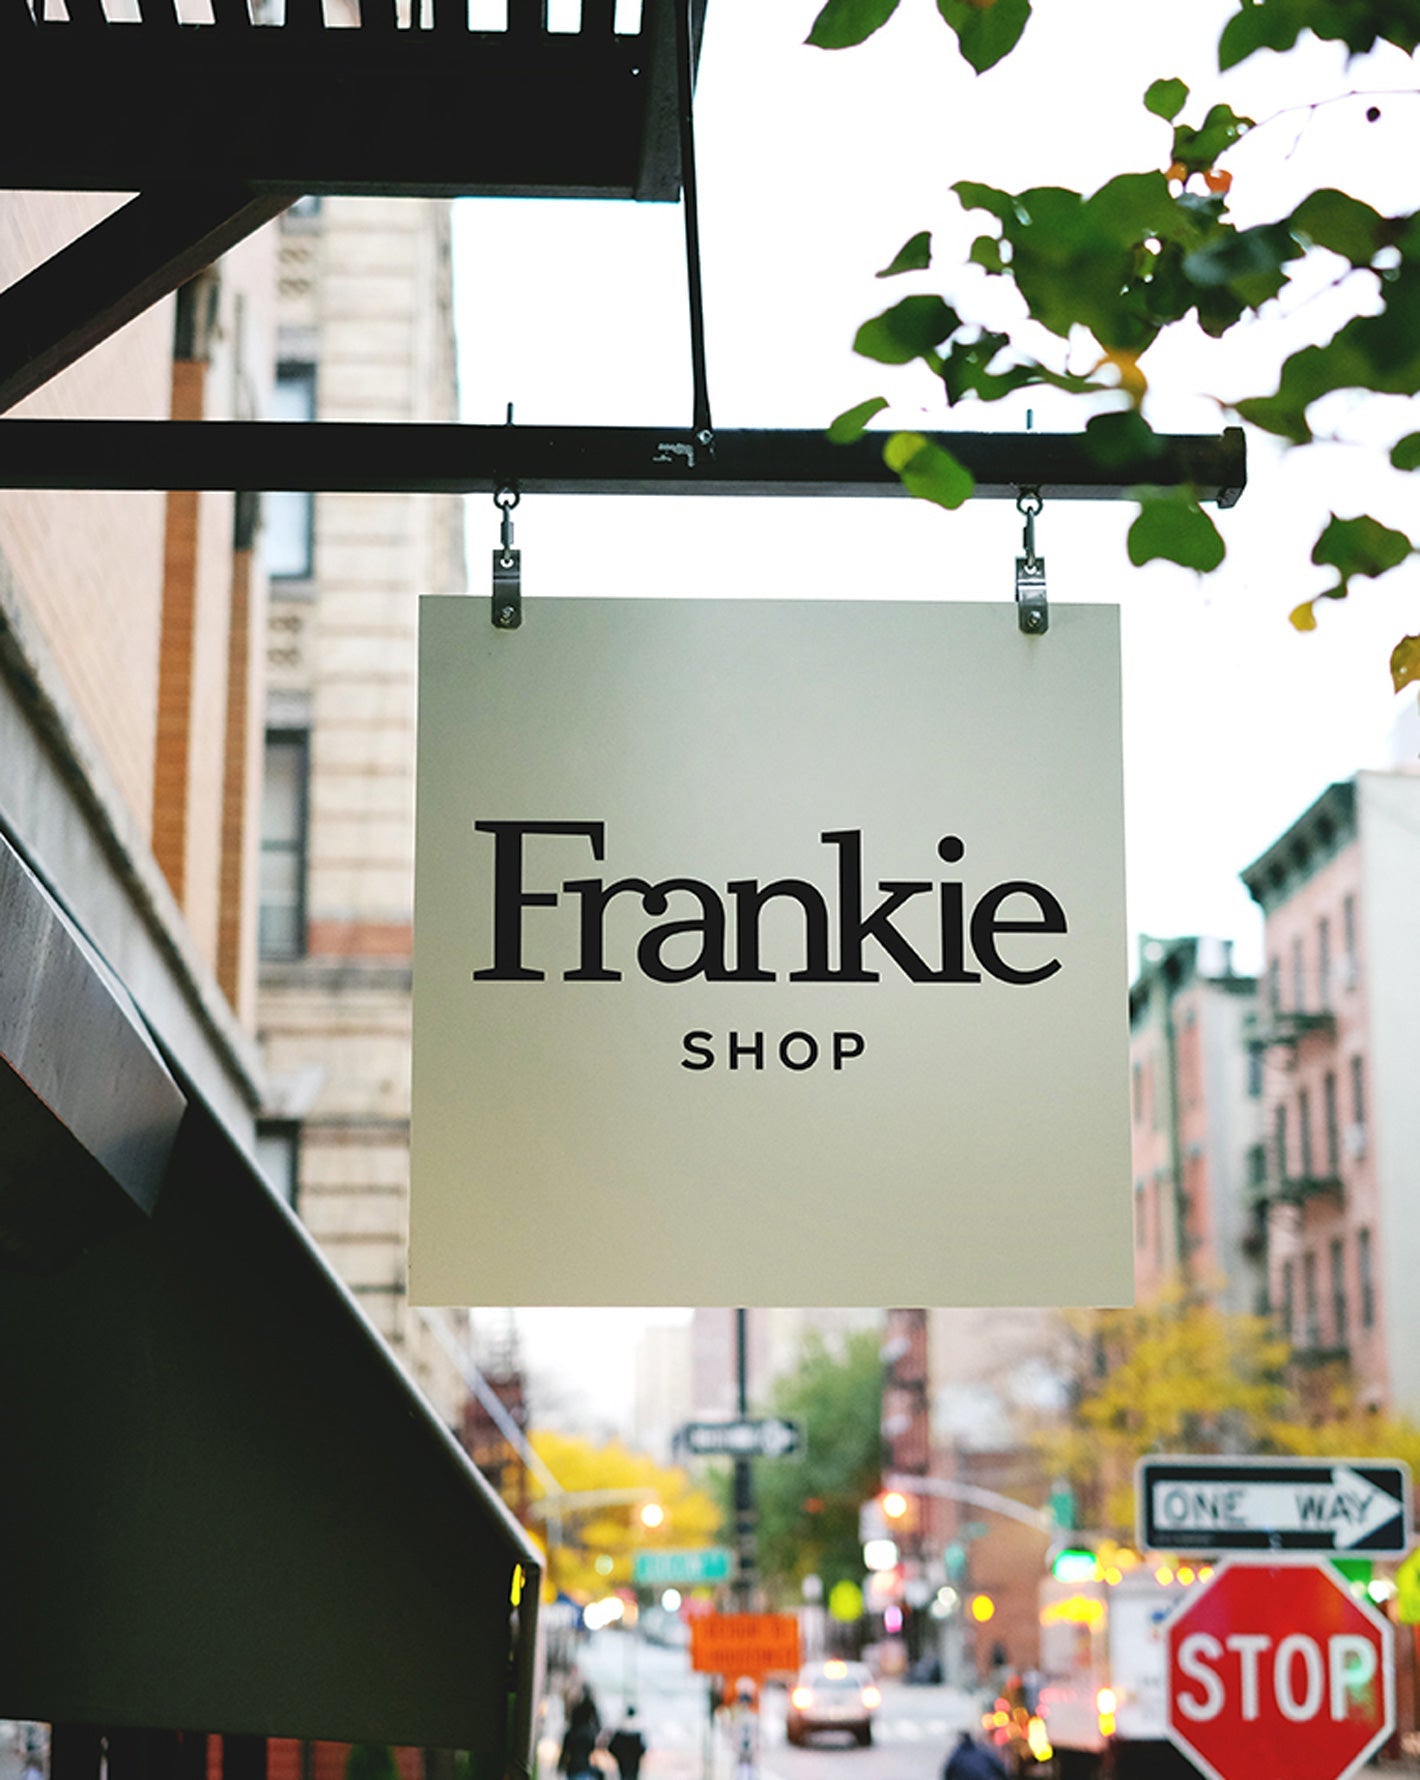 The Frankie Shop【タグ付き未使用 Astraボンバージャケット】